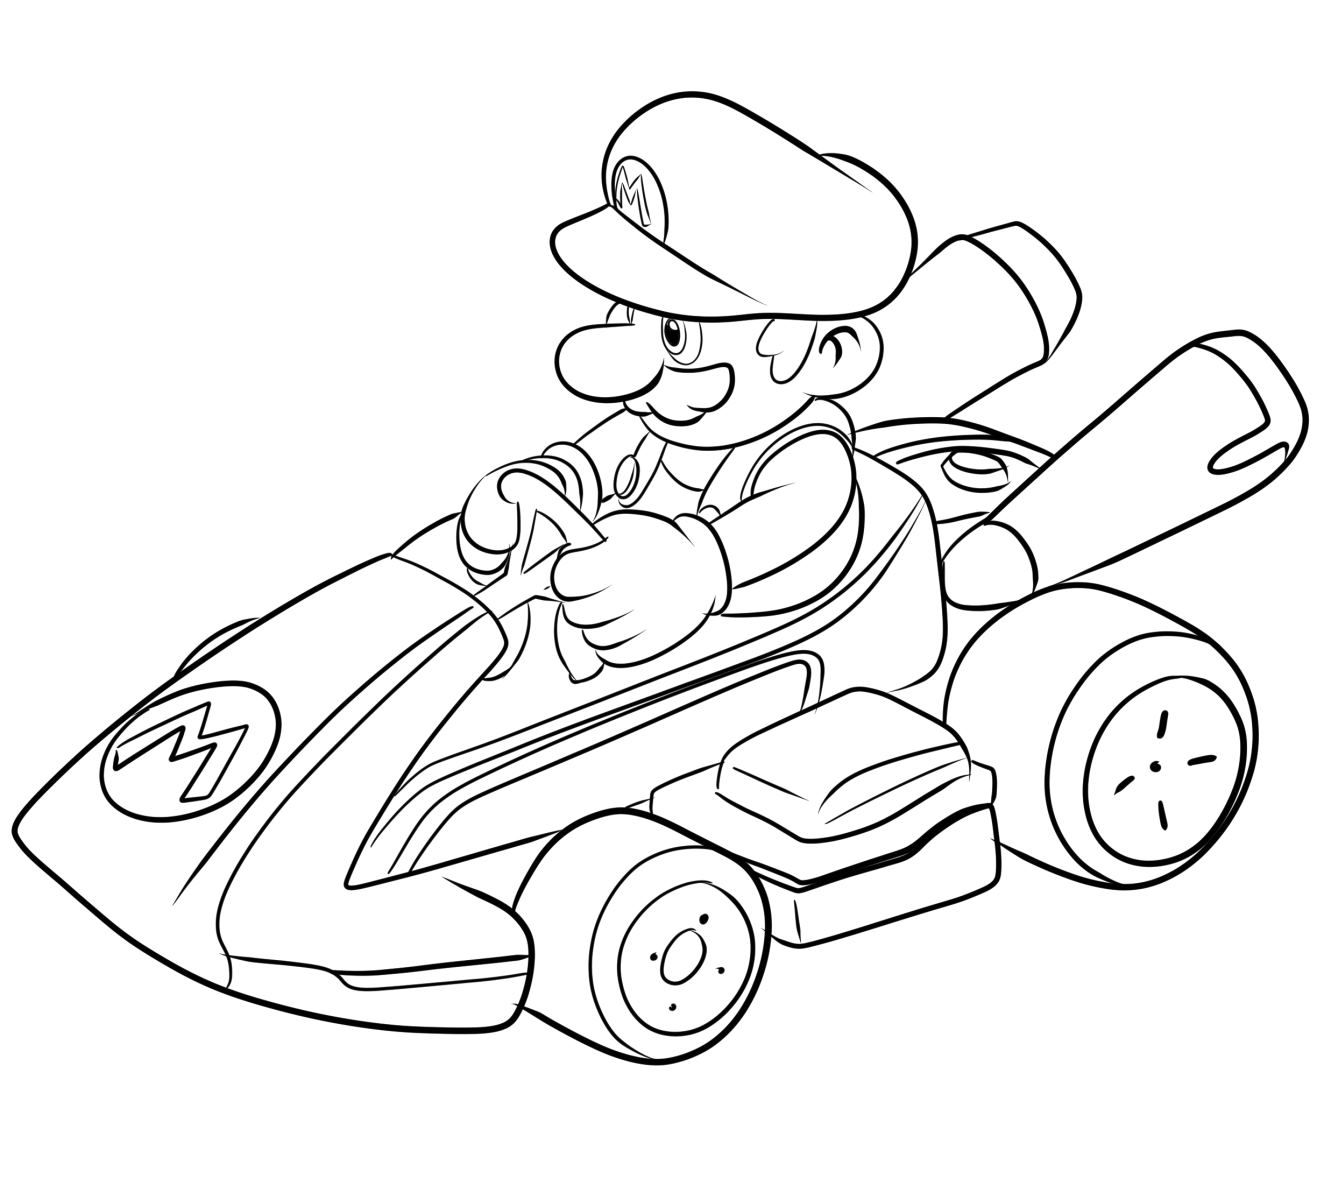 Dibujo 05 de Mario Kart para colorear